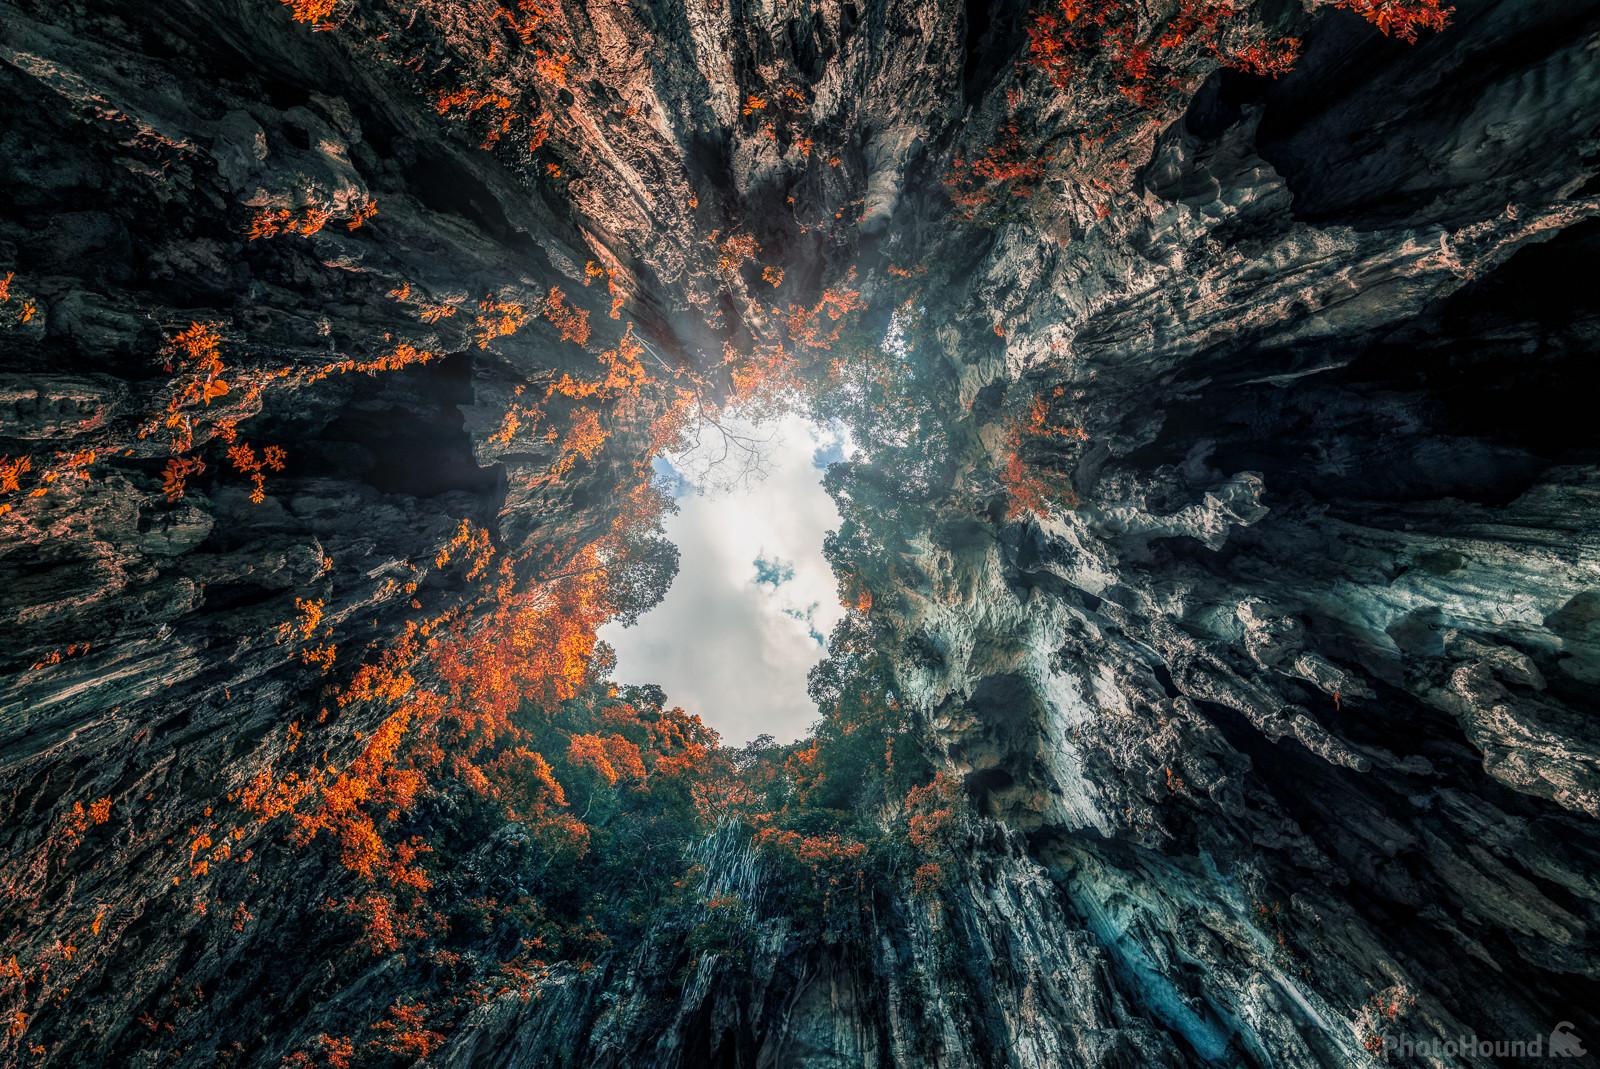 Image of Batu Caves by James Billings.